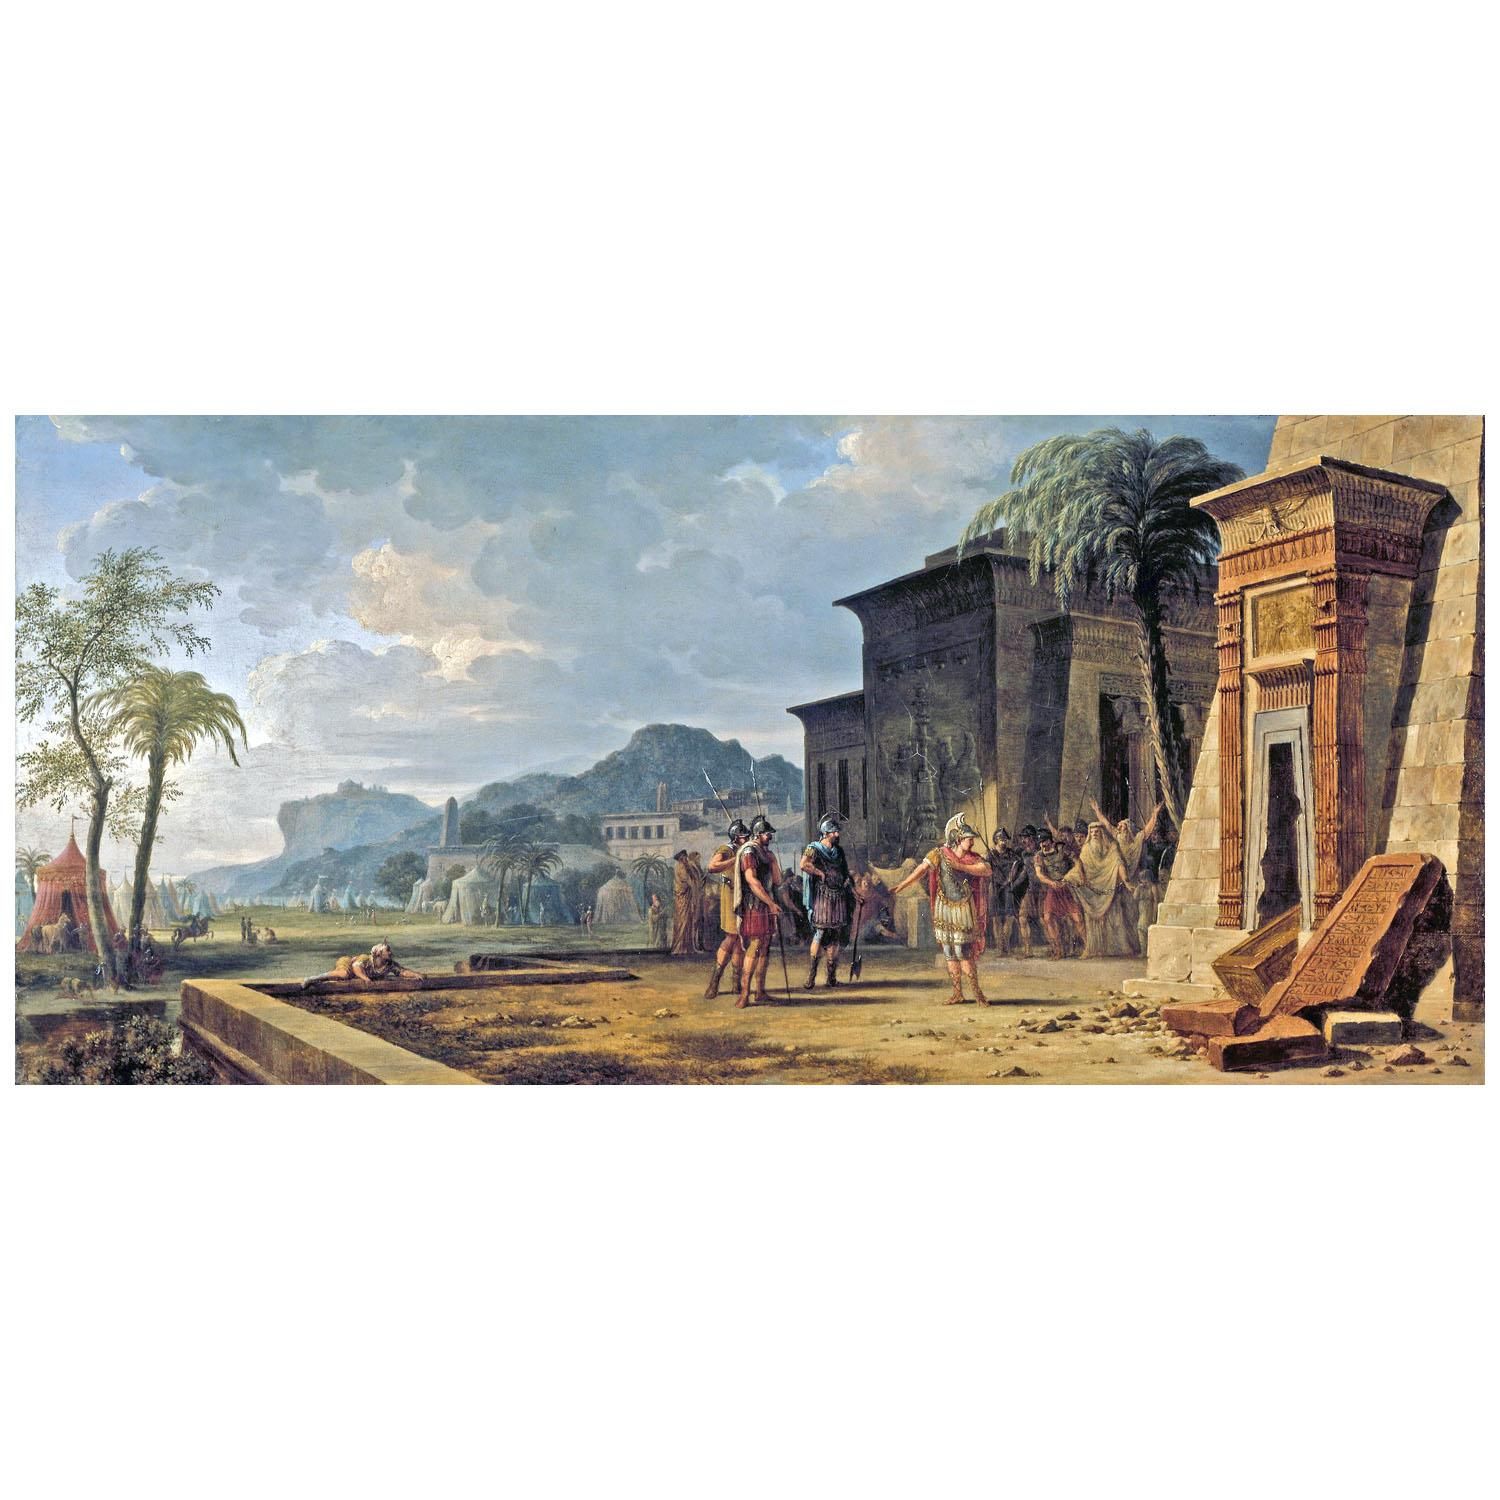 Pierre-Henri de Valenciennes. Alexandre au tombeau de Cyrus le Grand. 1796. Art Institute of Chicago